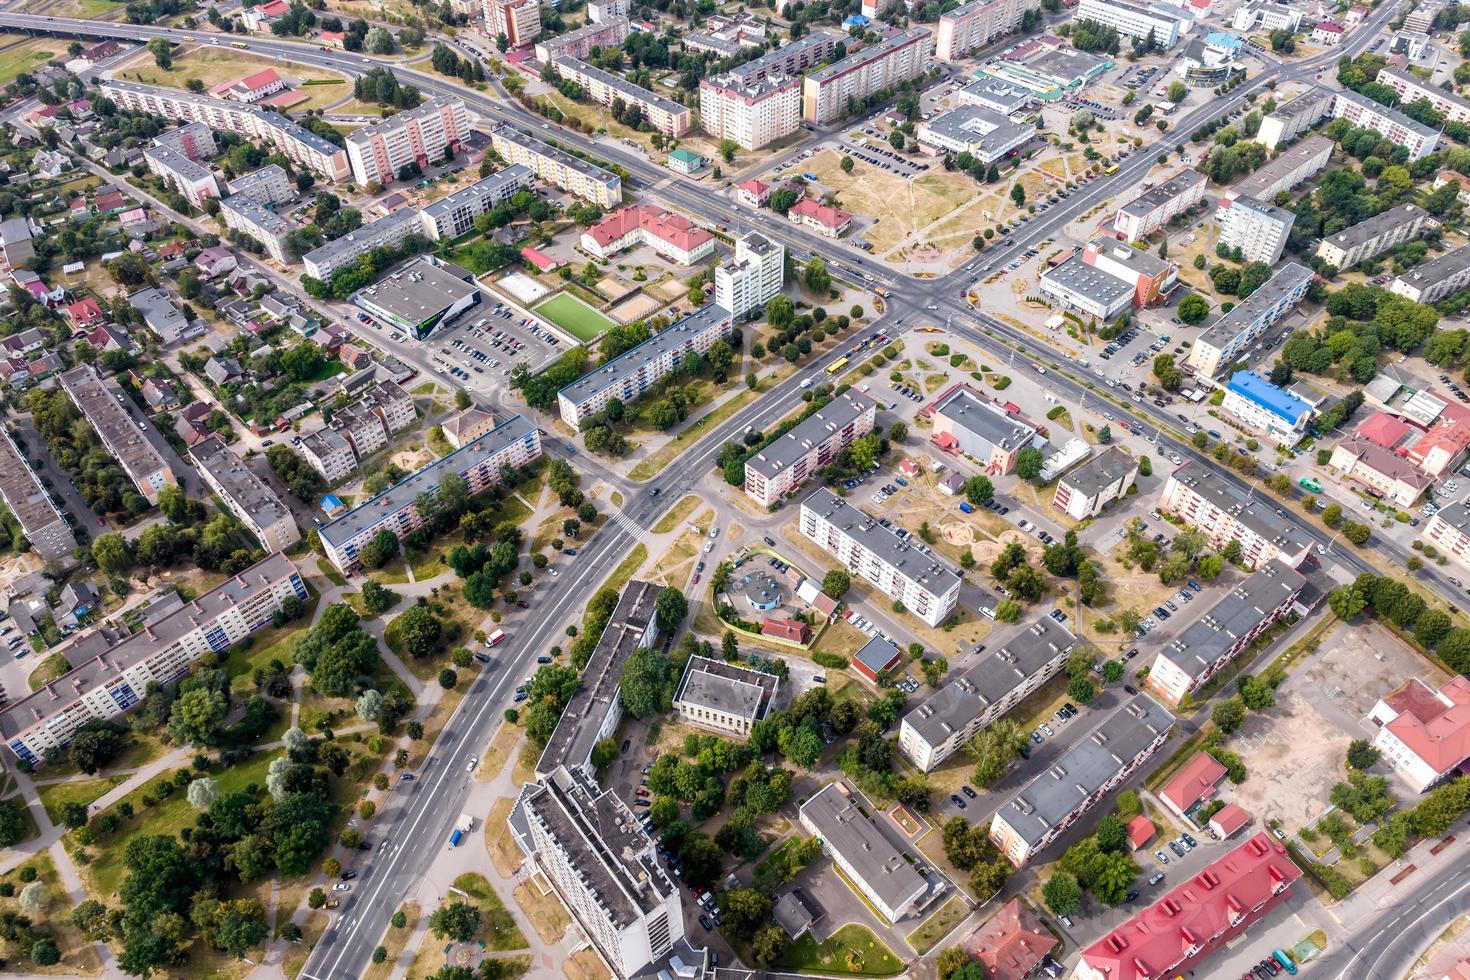 panorama- se från en bra höjd av en små provinsiell stad med en privat sektor och höghus lägenhet byggnader foto